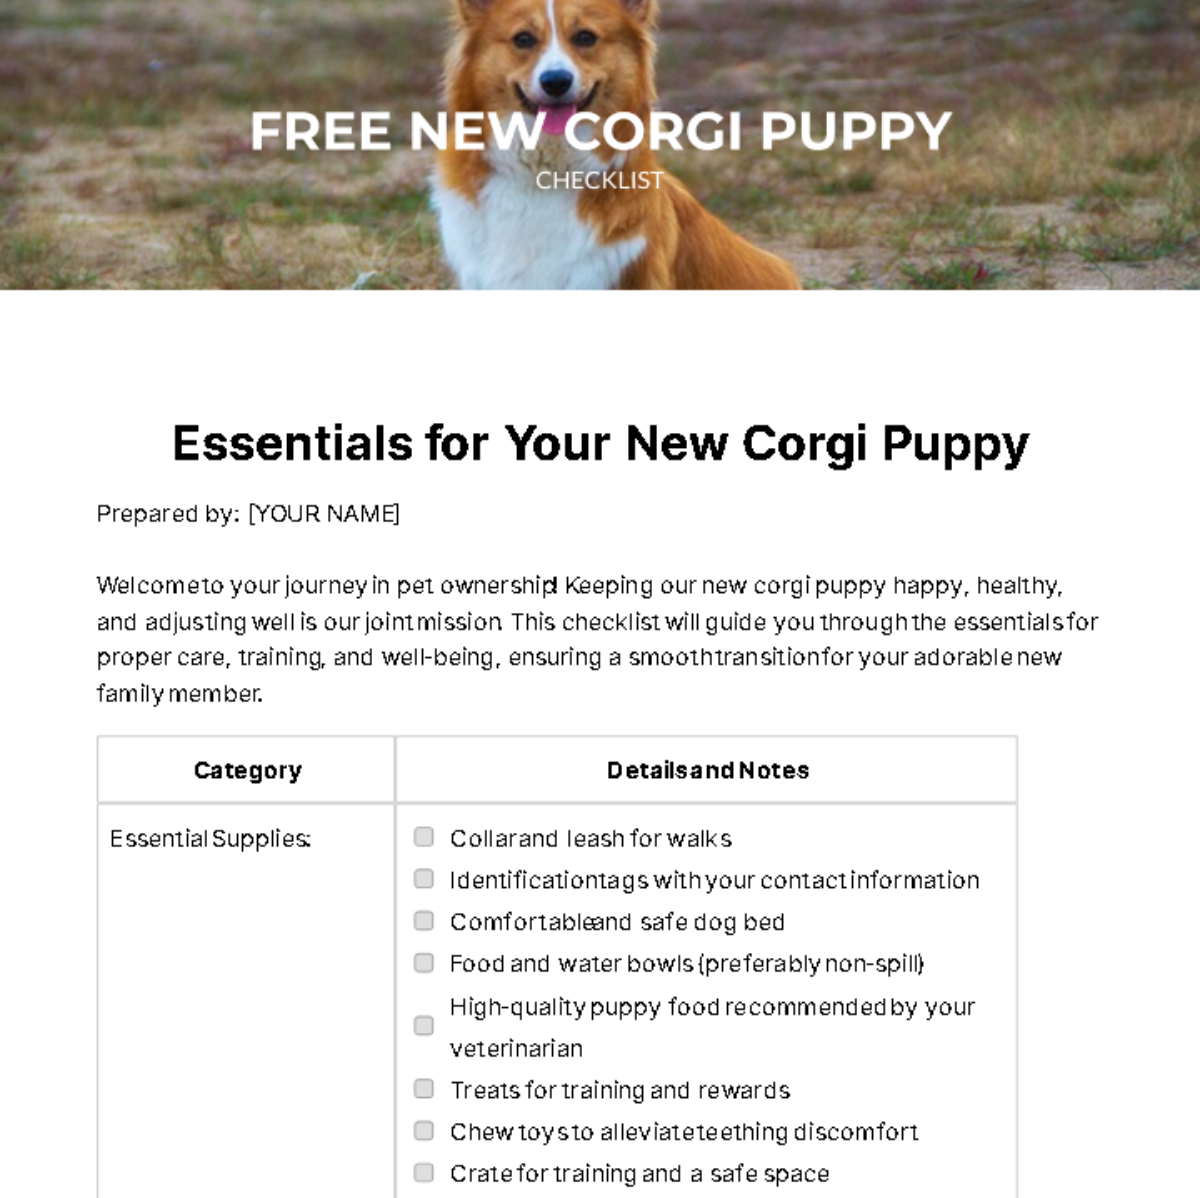 Free New Corgi Puppy Checklist Template